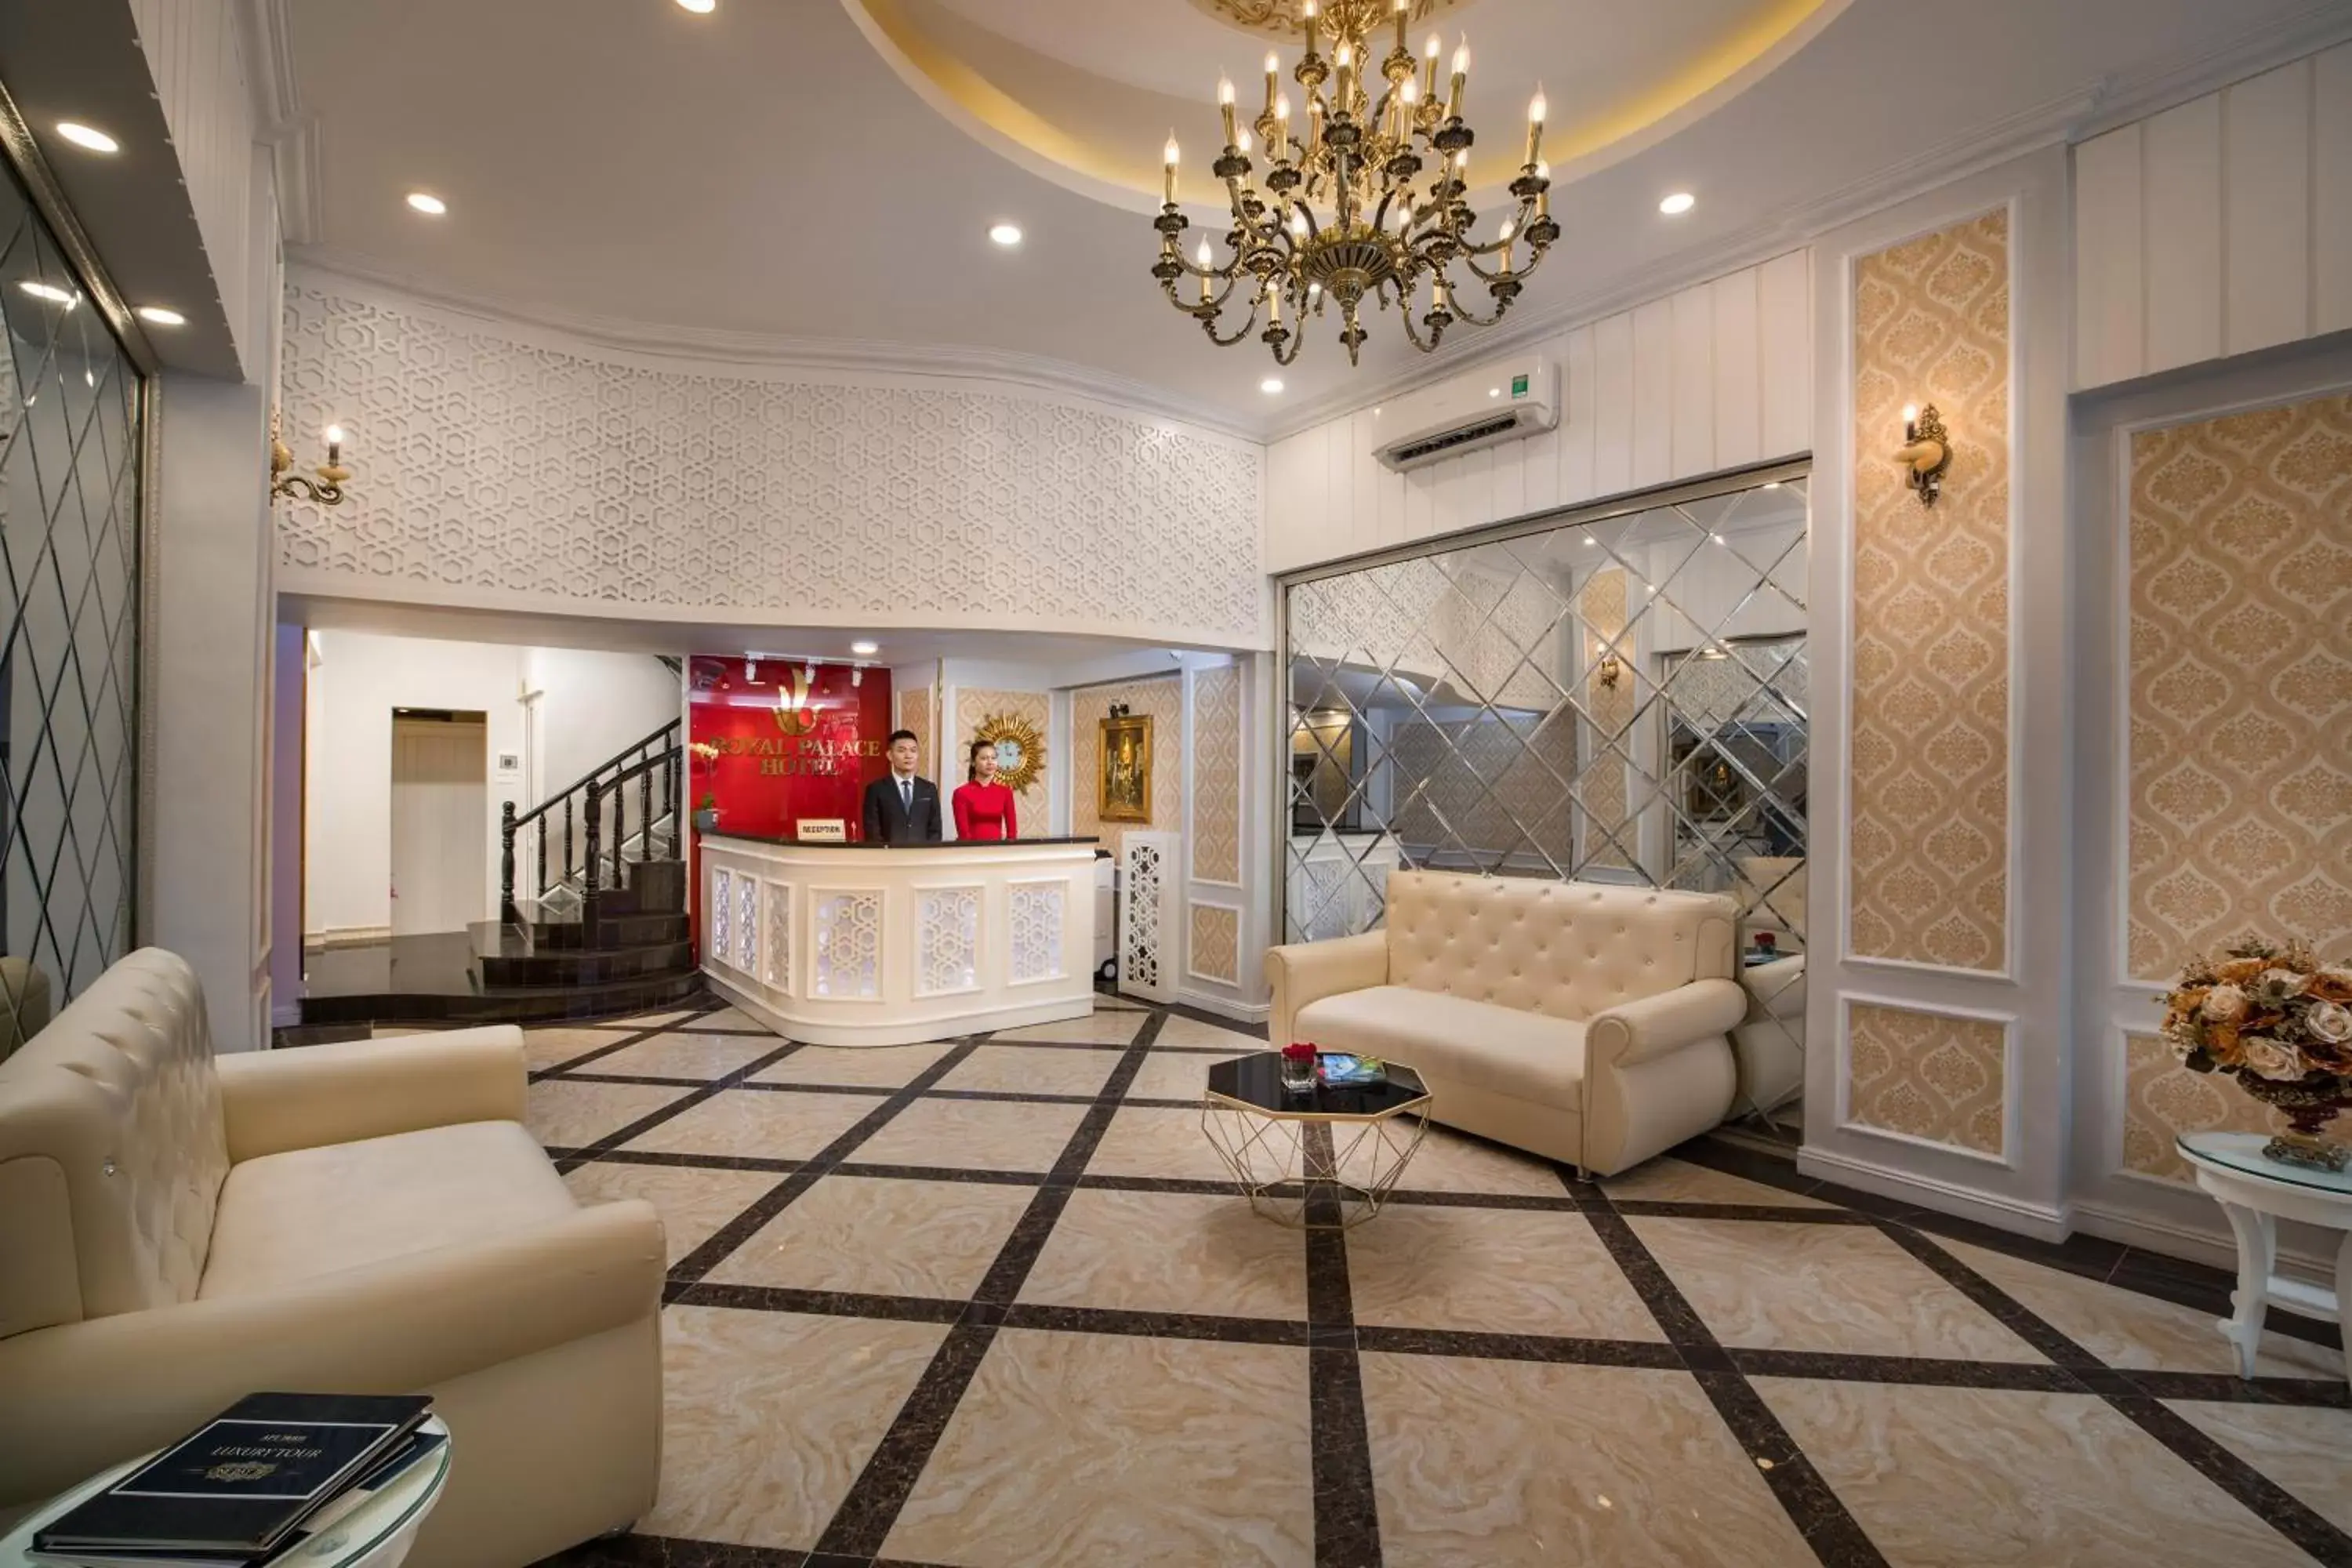 Lobby or reception, Lobby/Reception in Hanoi Royal Palace Hotel 2